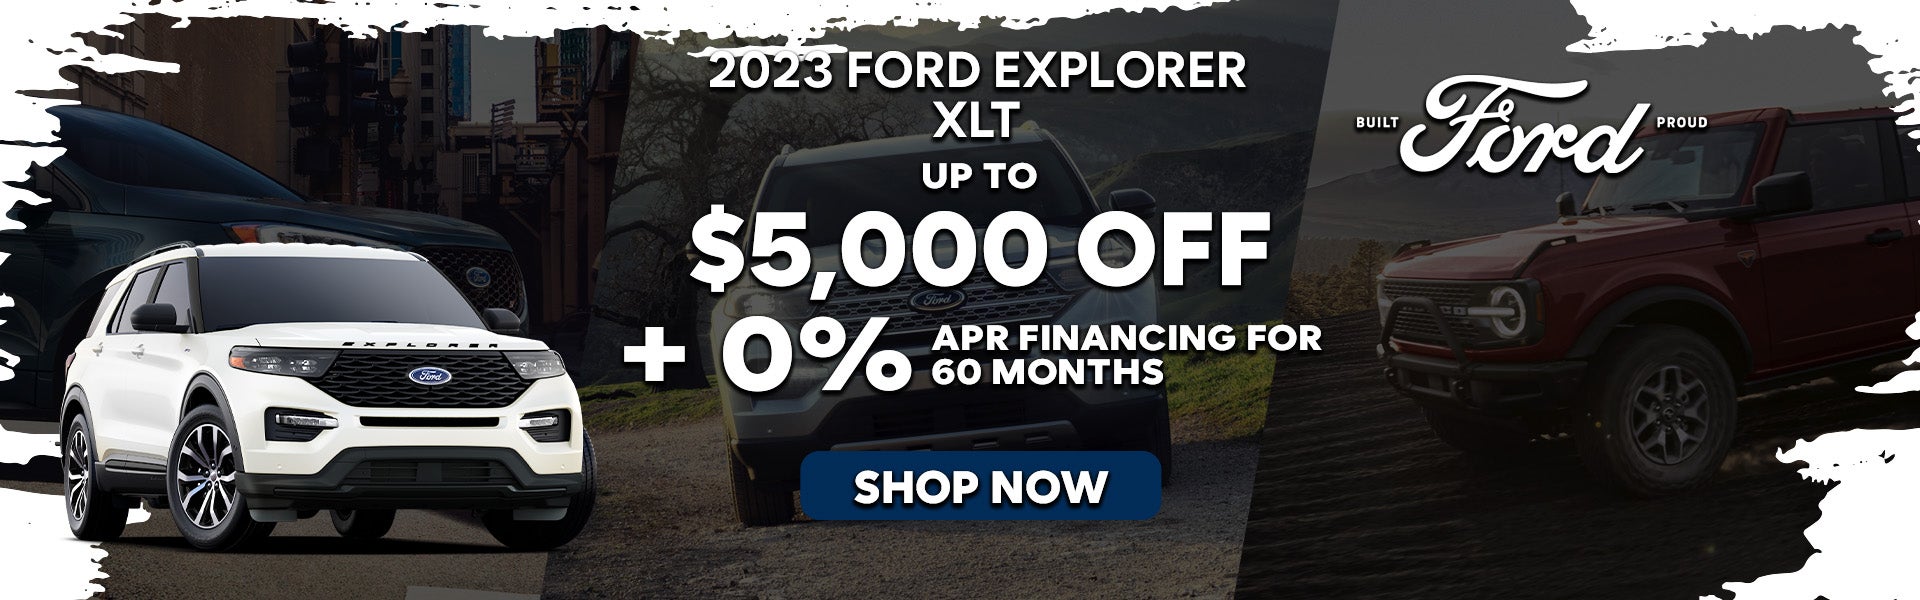 2023 Ford Explorer XLT Special Offer